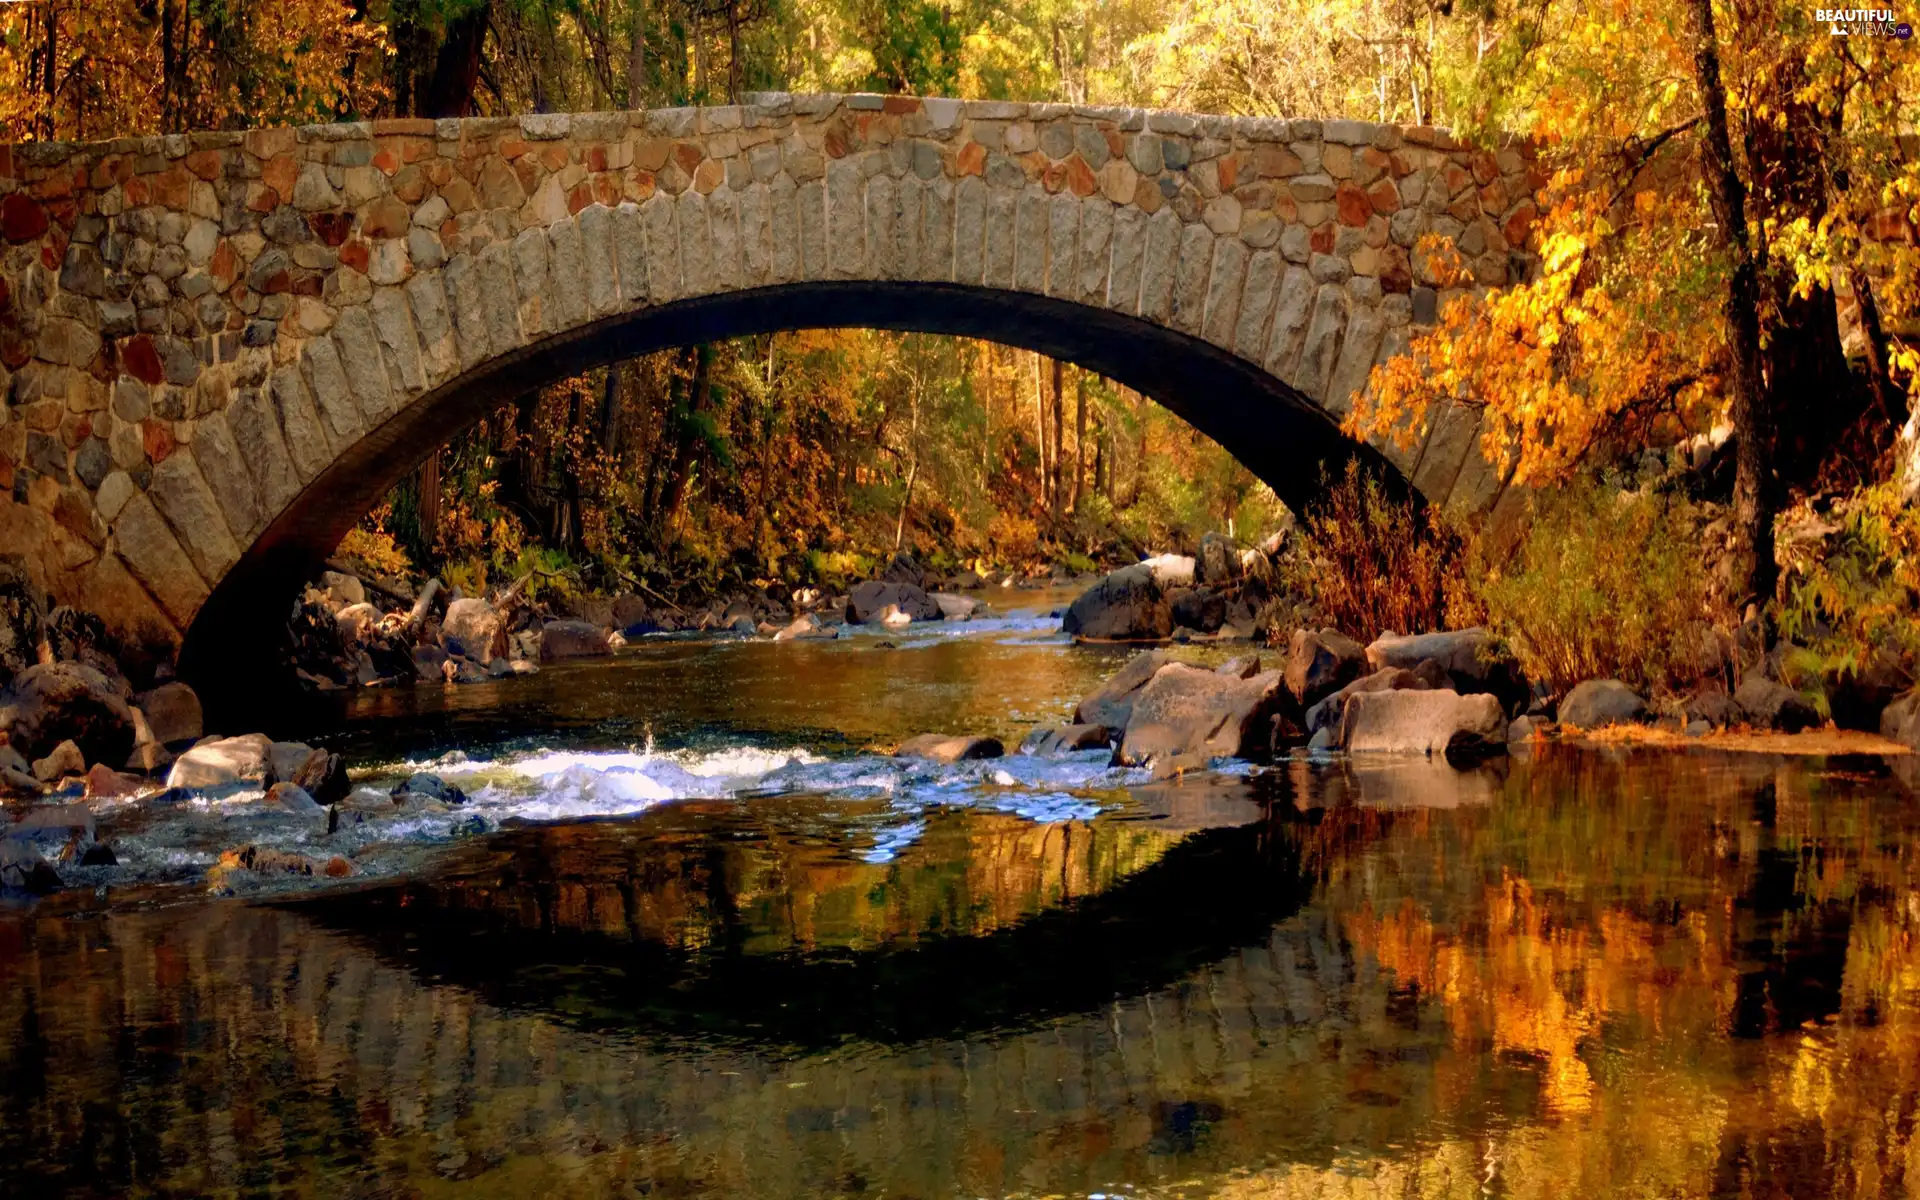 River, bridge, autumn